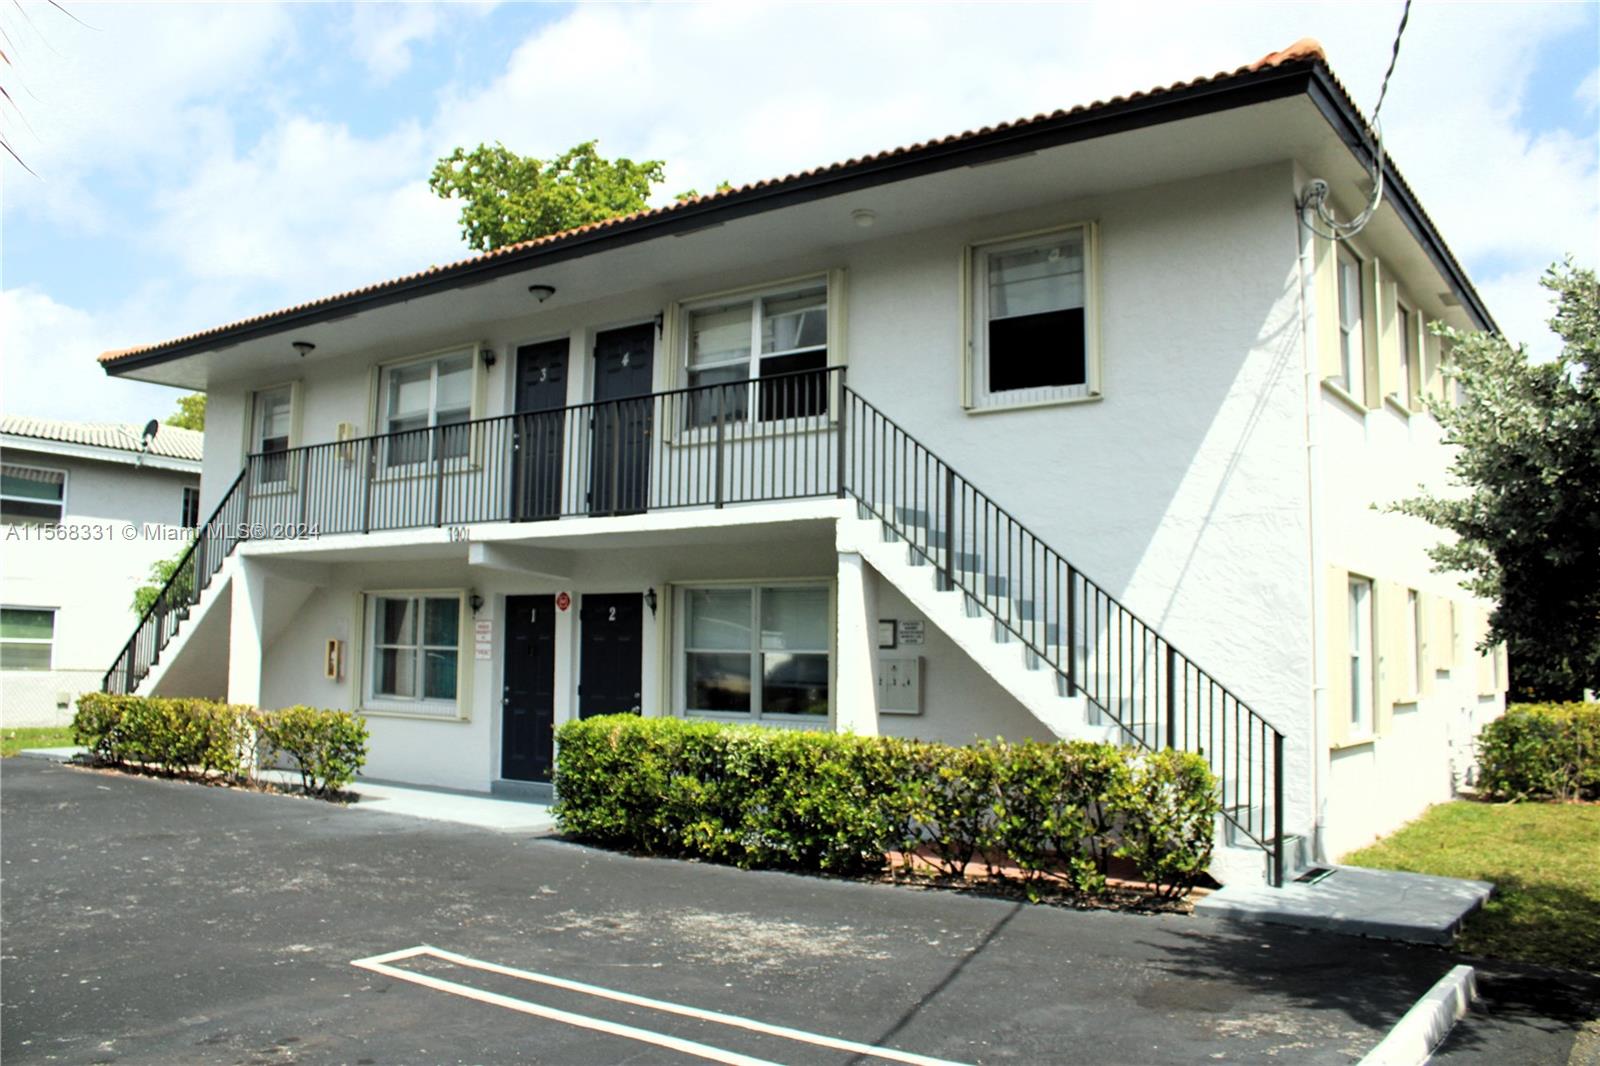 Rental Property at 7901 Nw 44th Ct Ct, Coral Springs, Broward County, Florida -  - $1,200,000 MO.